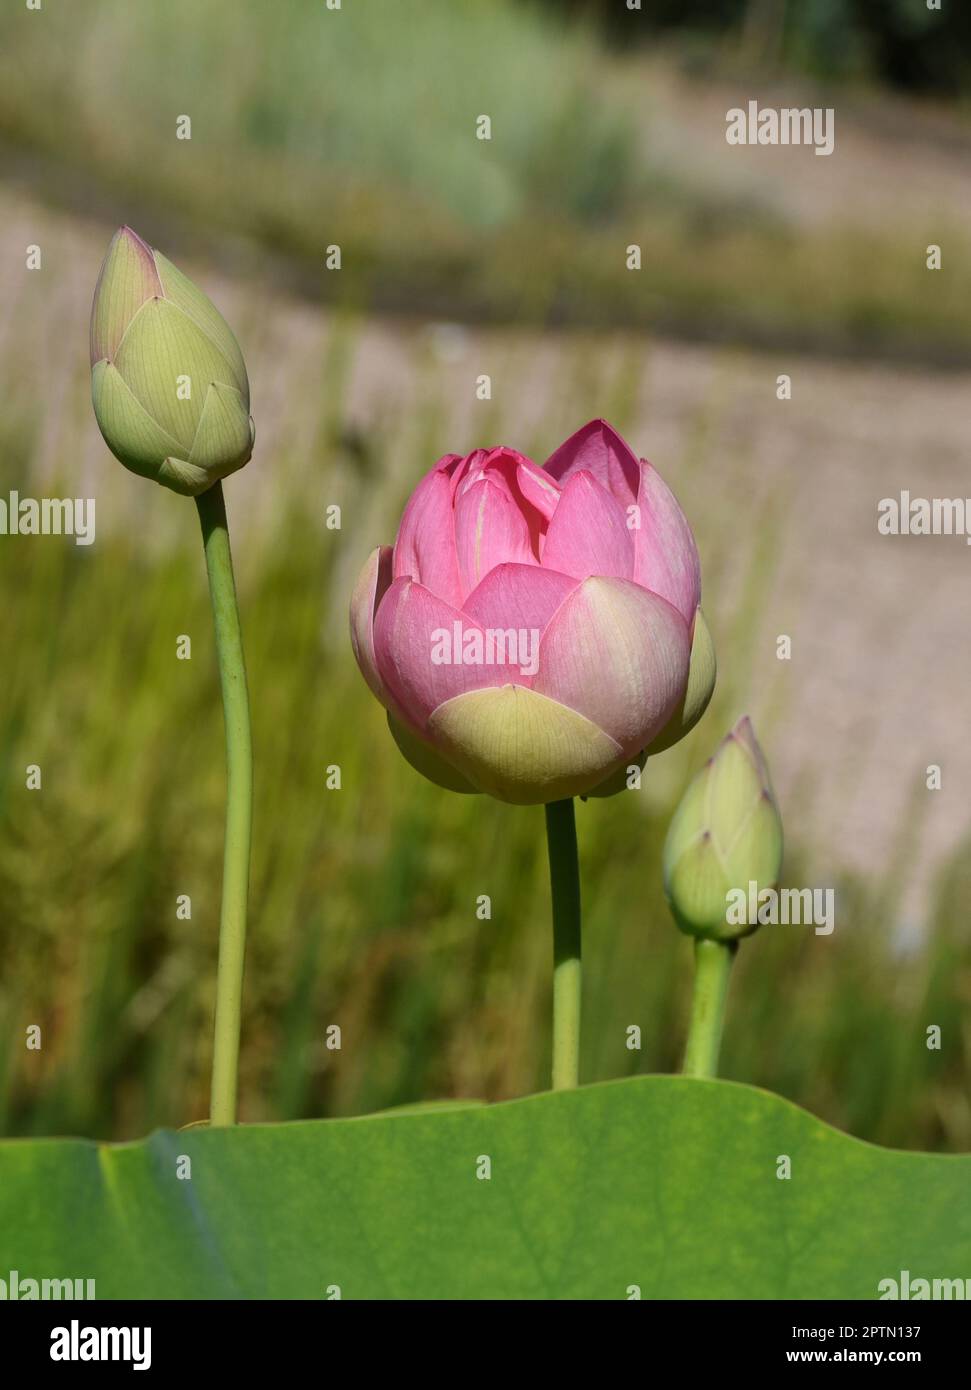 Lotussamen von der Lotosblume, Lotus nucifera, ist essbar und kann auch zum Aussaehen verwendet werden. Molehills on lawns can leave unsightly marks. Stock Photo